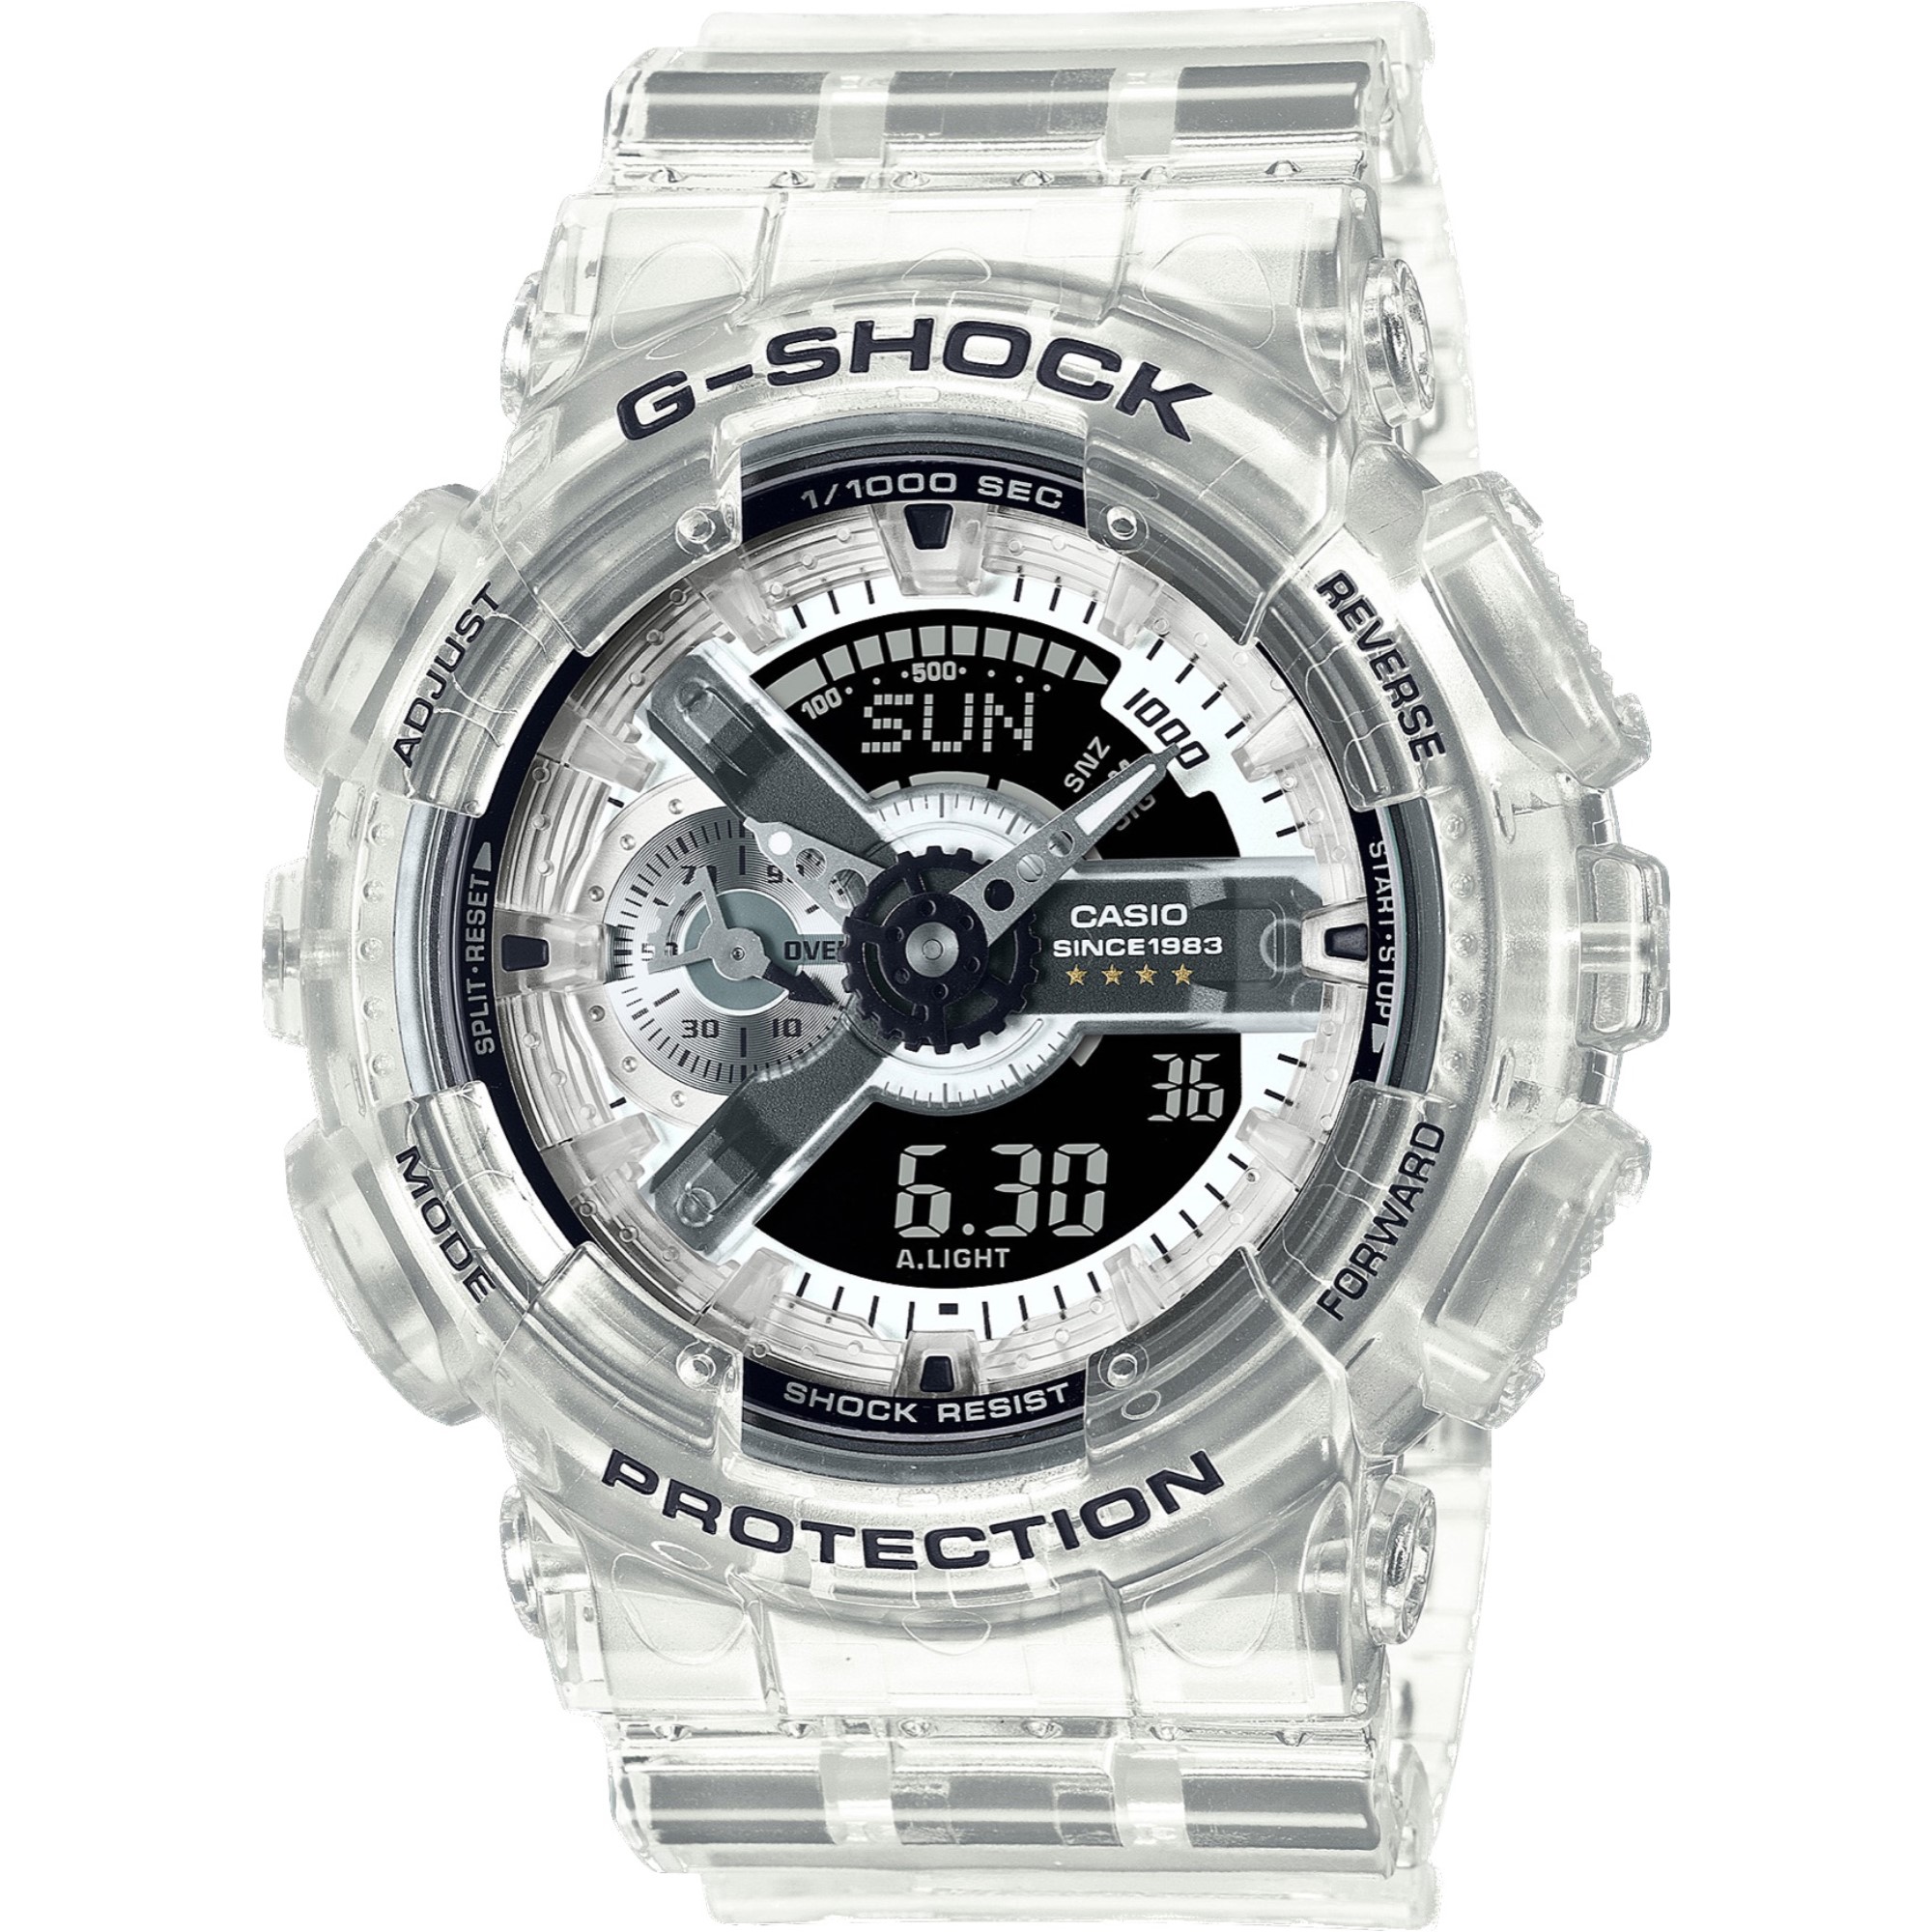 カシオ CASIO G-SHOCK 腕時計 ユニセックス GMA-S114RX-7ADR Gショック クオーツ ブラック/シルバーxスケルトン アナデジ表示